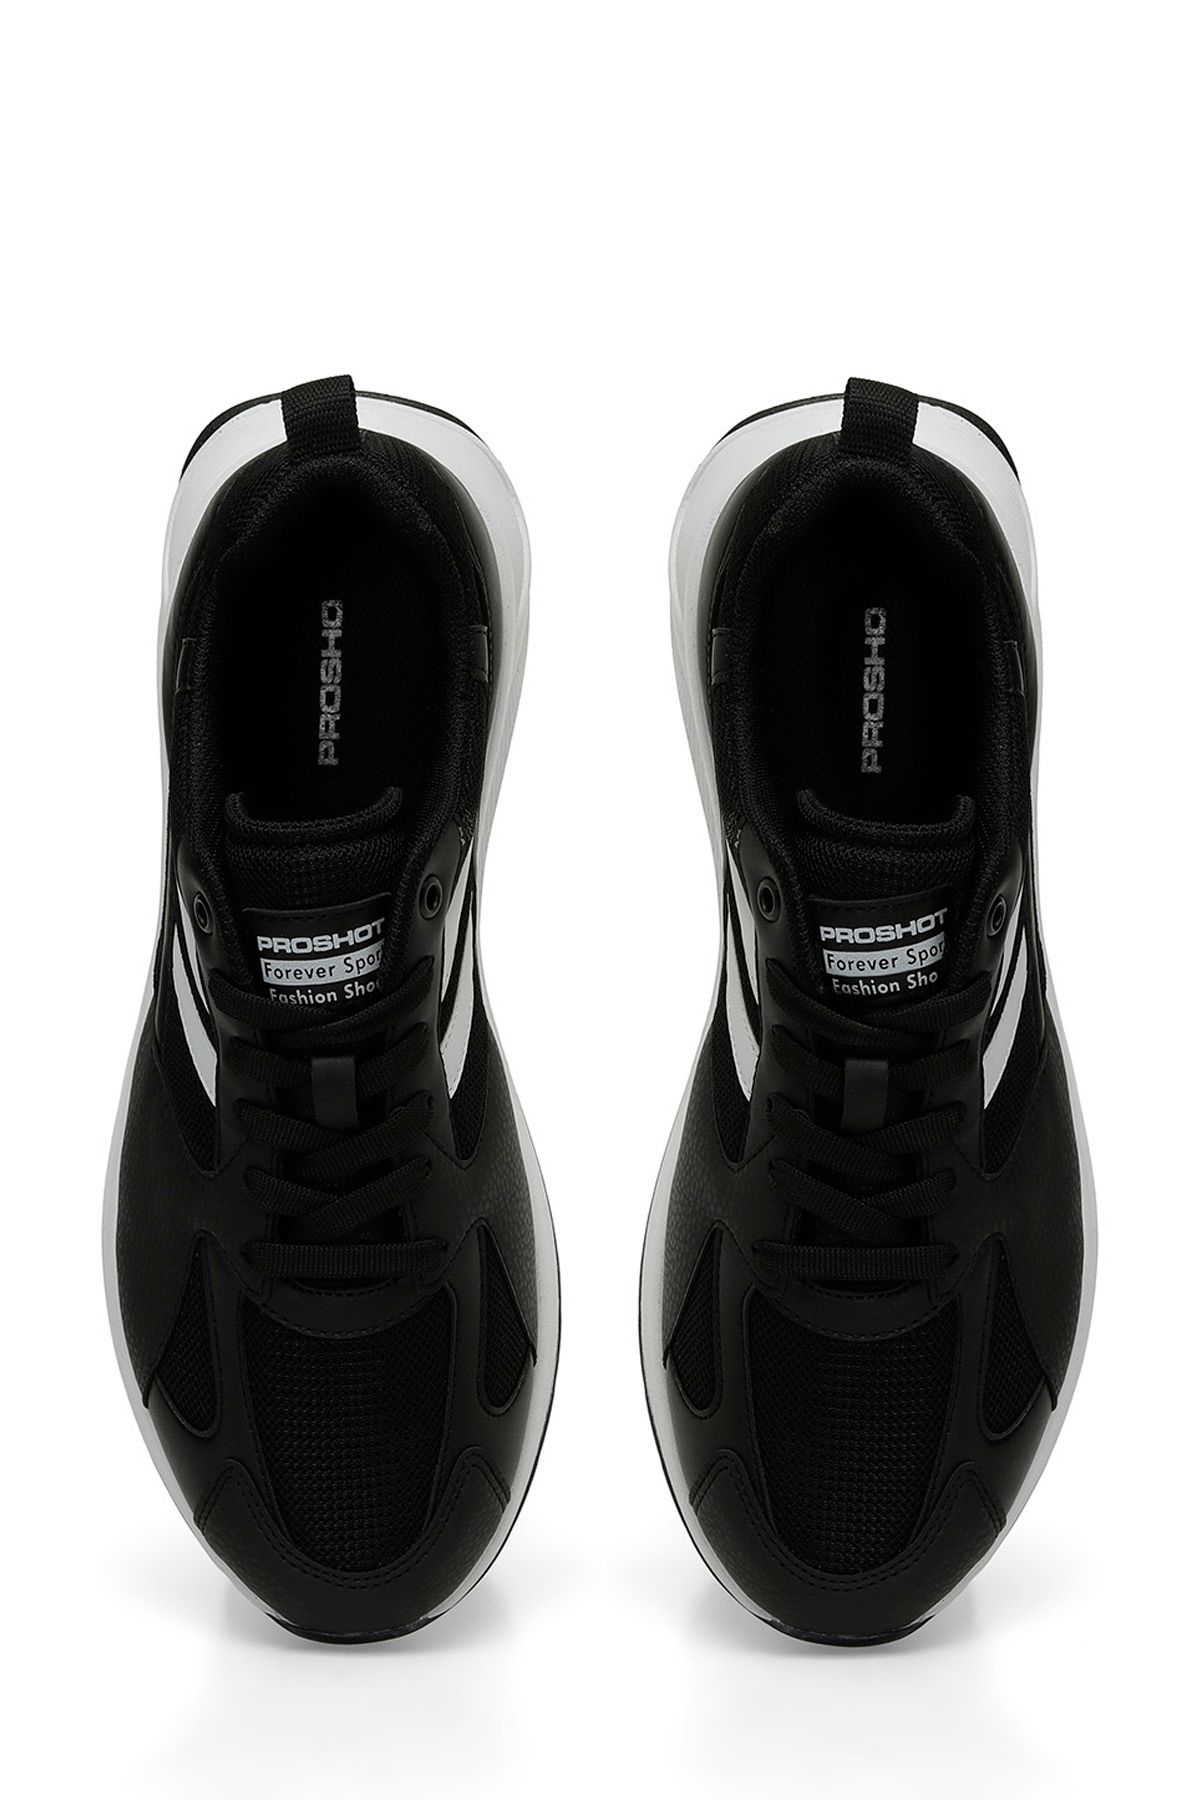 Proshot MAXI 4FX Siyah Erkek Koşu Ayakkabısı